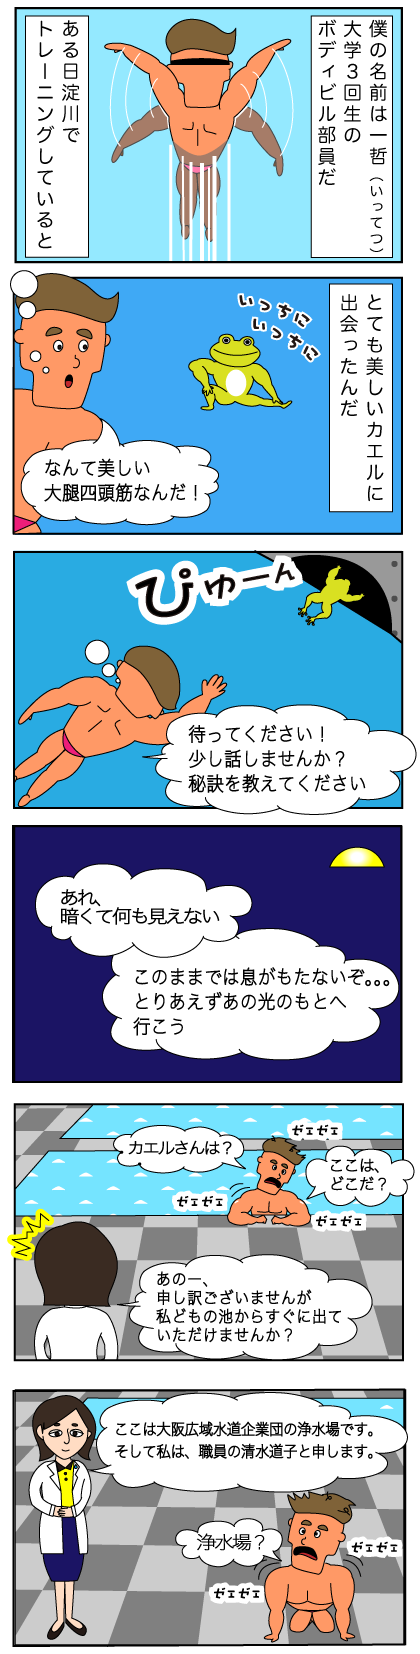 ボディビル部員の男性キャラクター一哲くんが美しいカエルを追って大阪広域水道企業団浄水場の敷地に入り込んでしまい、女性職員のキャラクター清水道子さんと出会うという6コマ漫画のイラスト